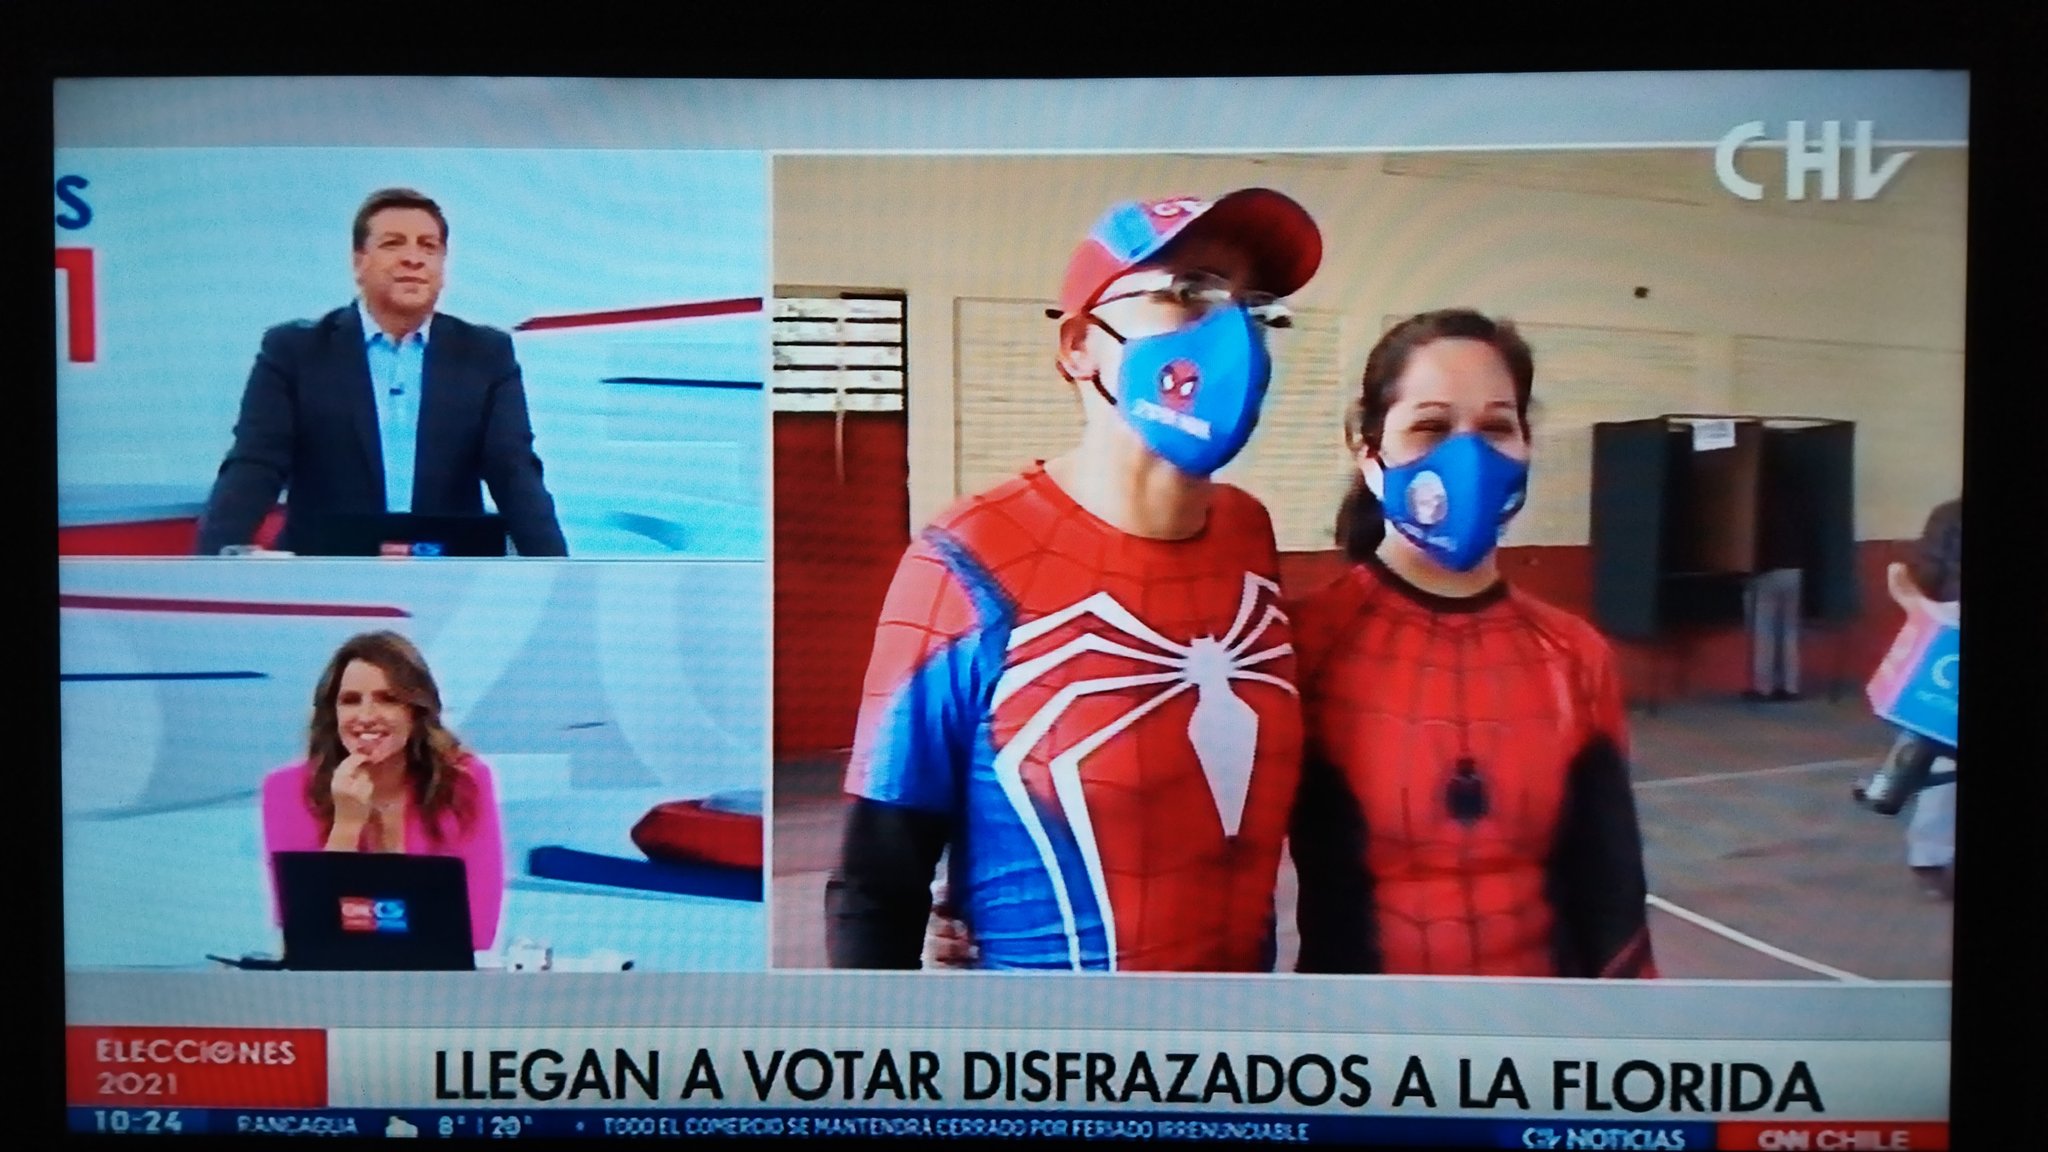 Superheroes Pareja Votar Chv